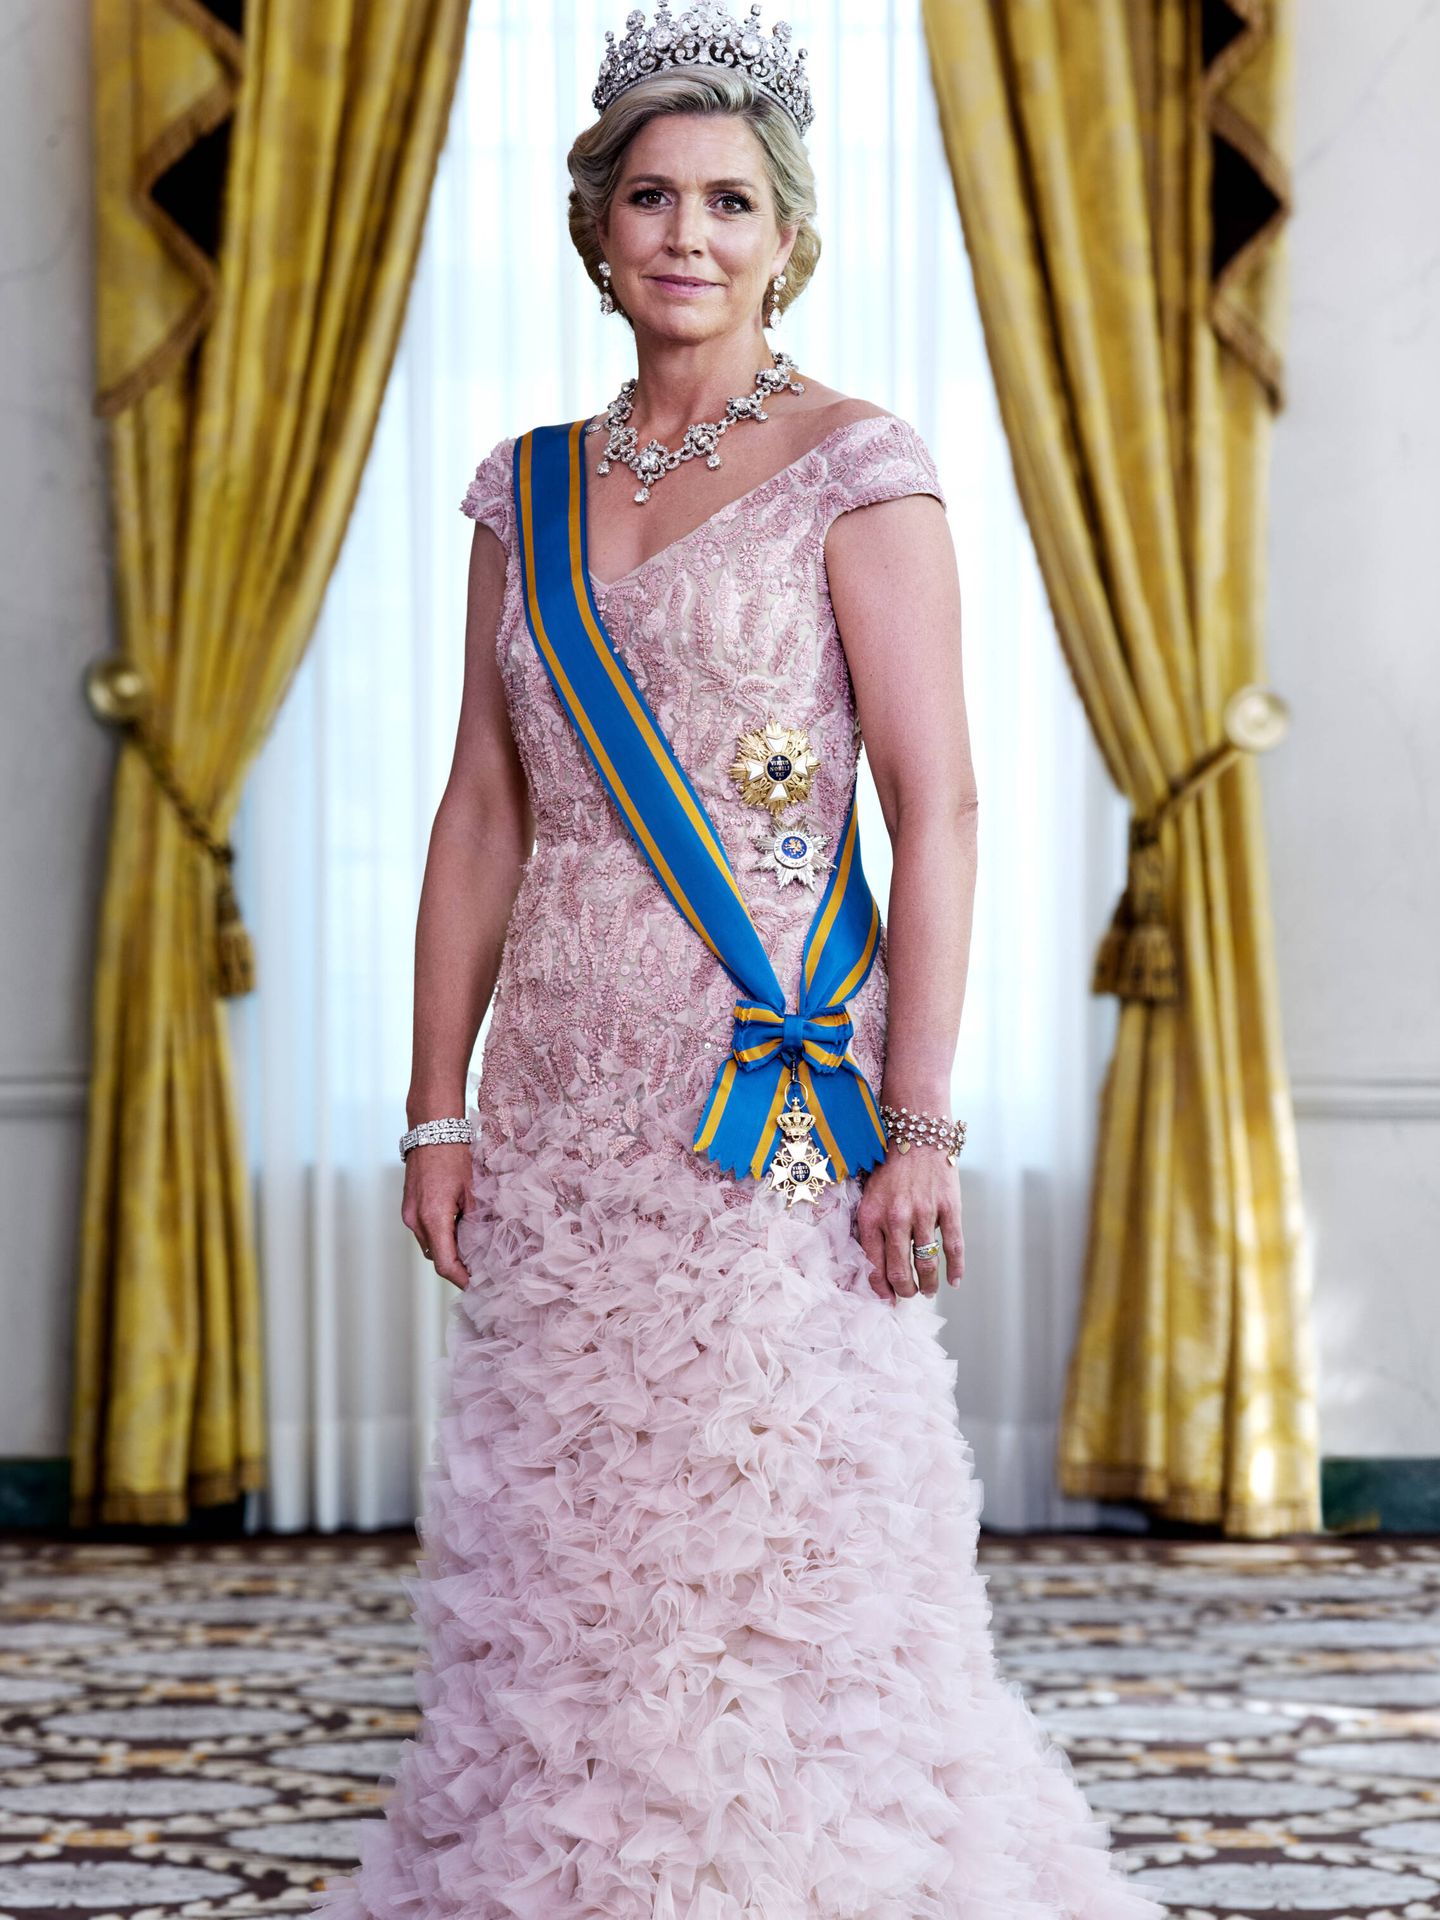 La reina Máxima. (RVD/Anton Corbijn)